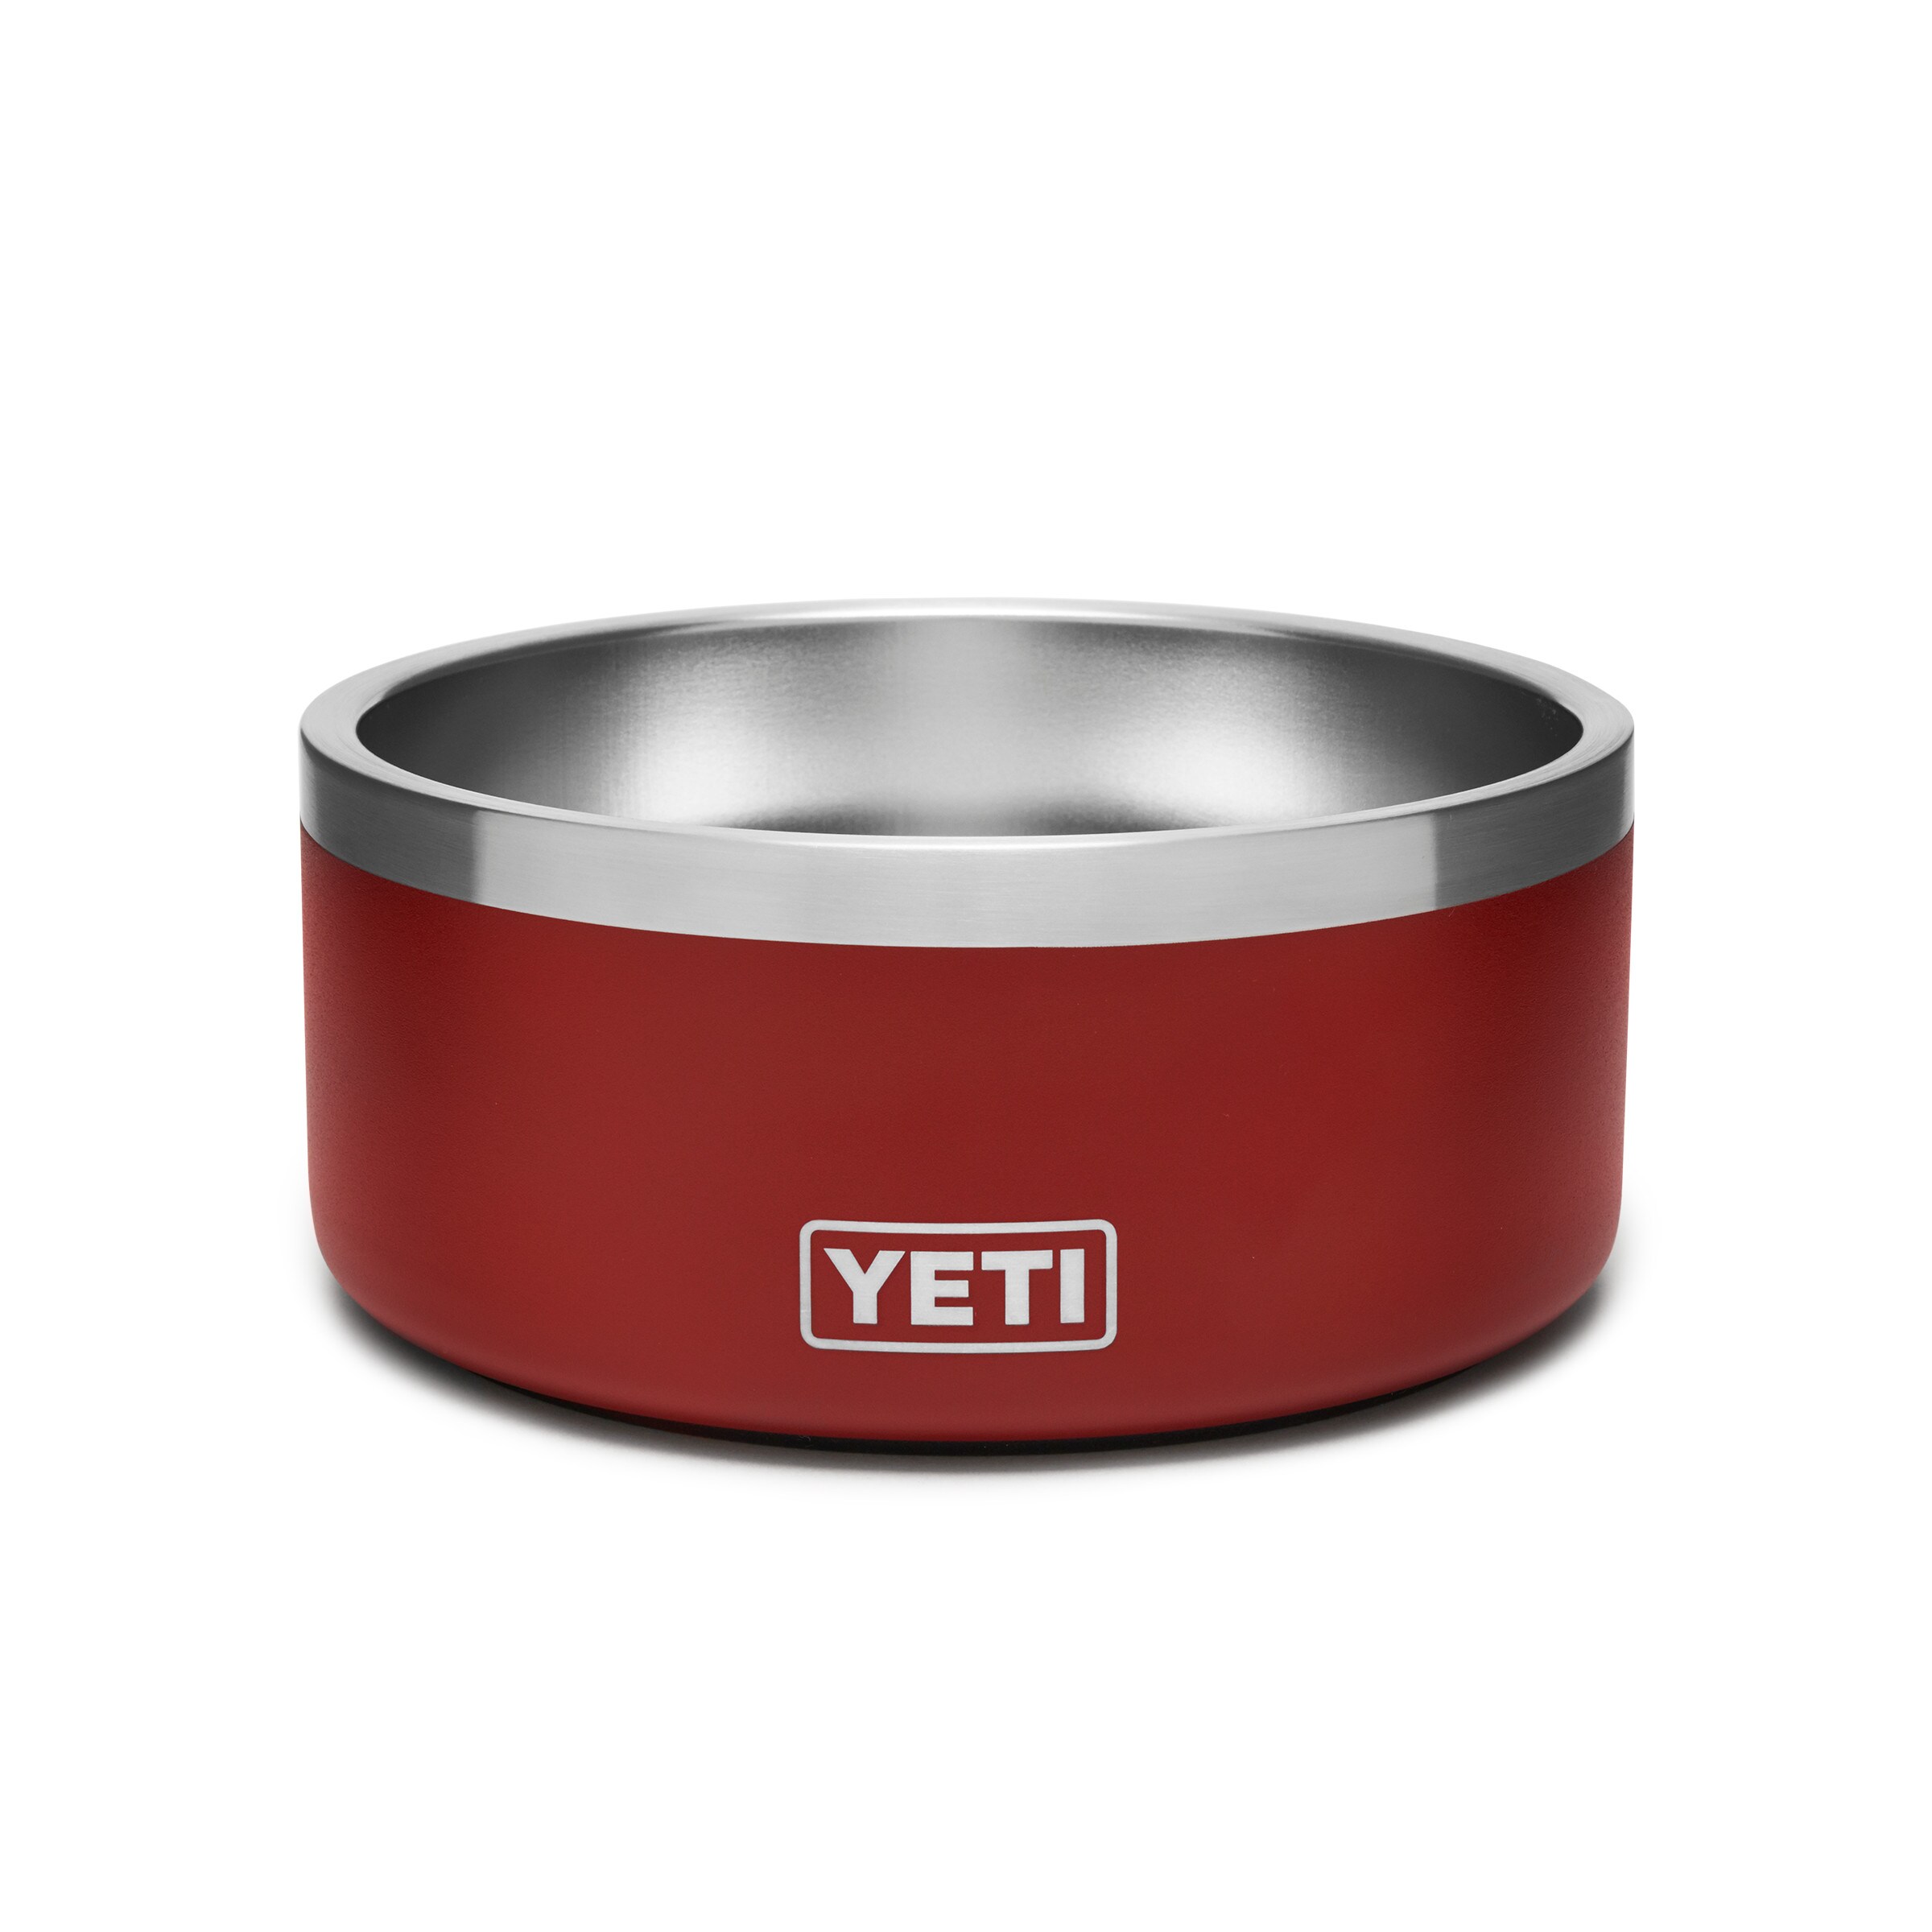 YETI Boomer 32-oz Metal Dog Bowl Set (1 Bowls) in the Food & Water 